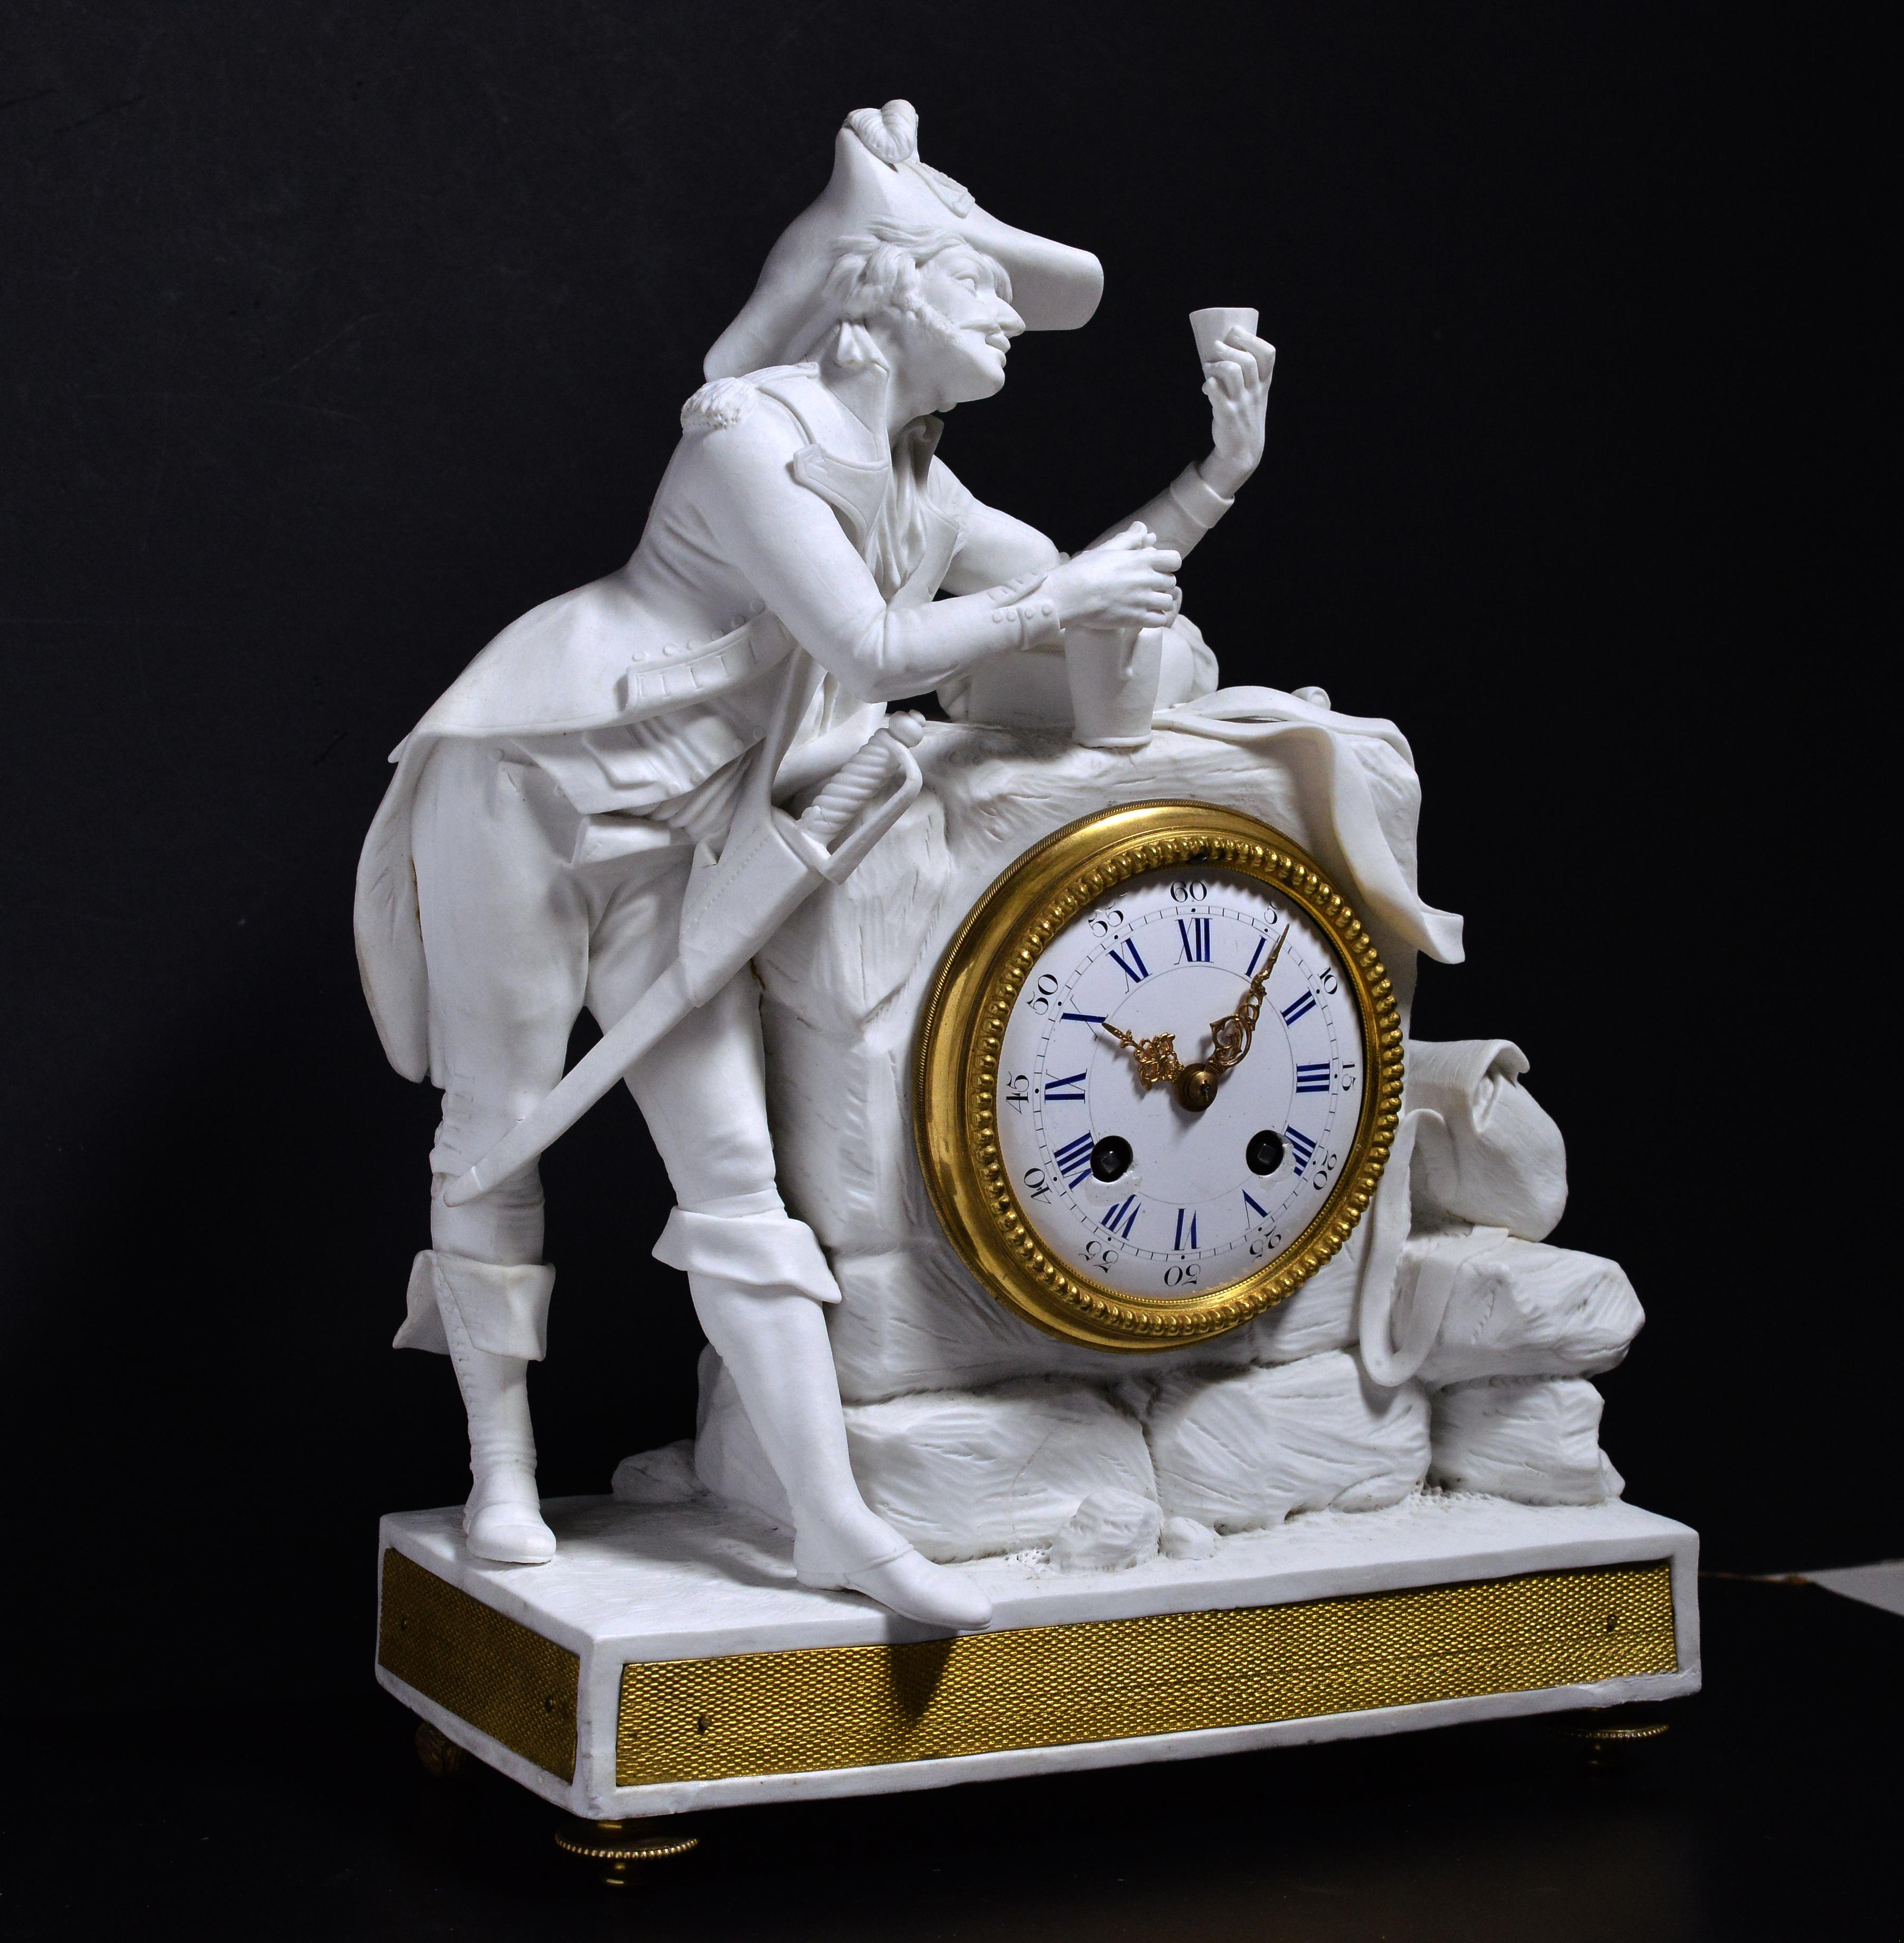 Réalisée en porcelaine au milieu du XIXe siècle, probablement par la Manufacture royale française de porcelaine de Sèvres, l'horloge se présente sous la forme d'une scène où un élégant officier est représenté à mi-chemin de la routine militaire,